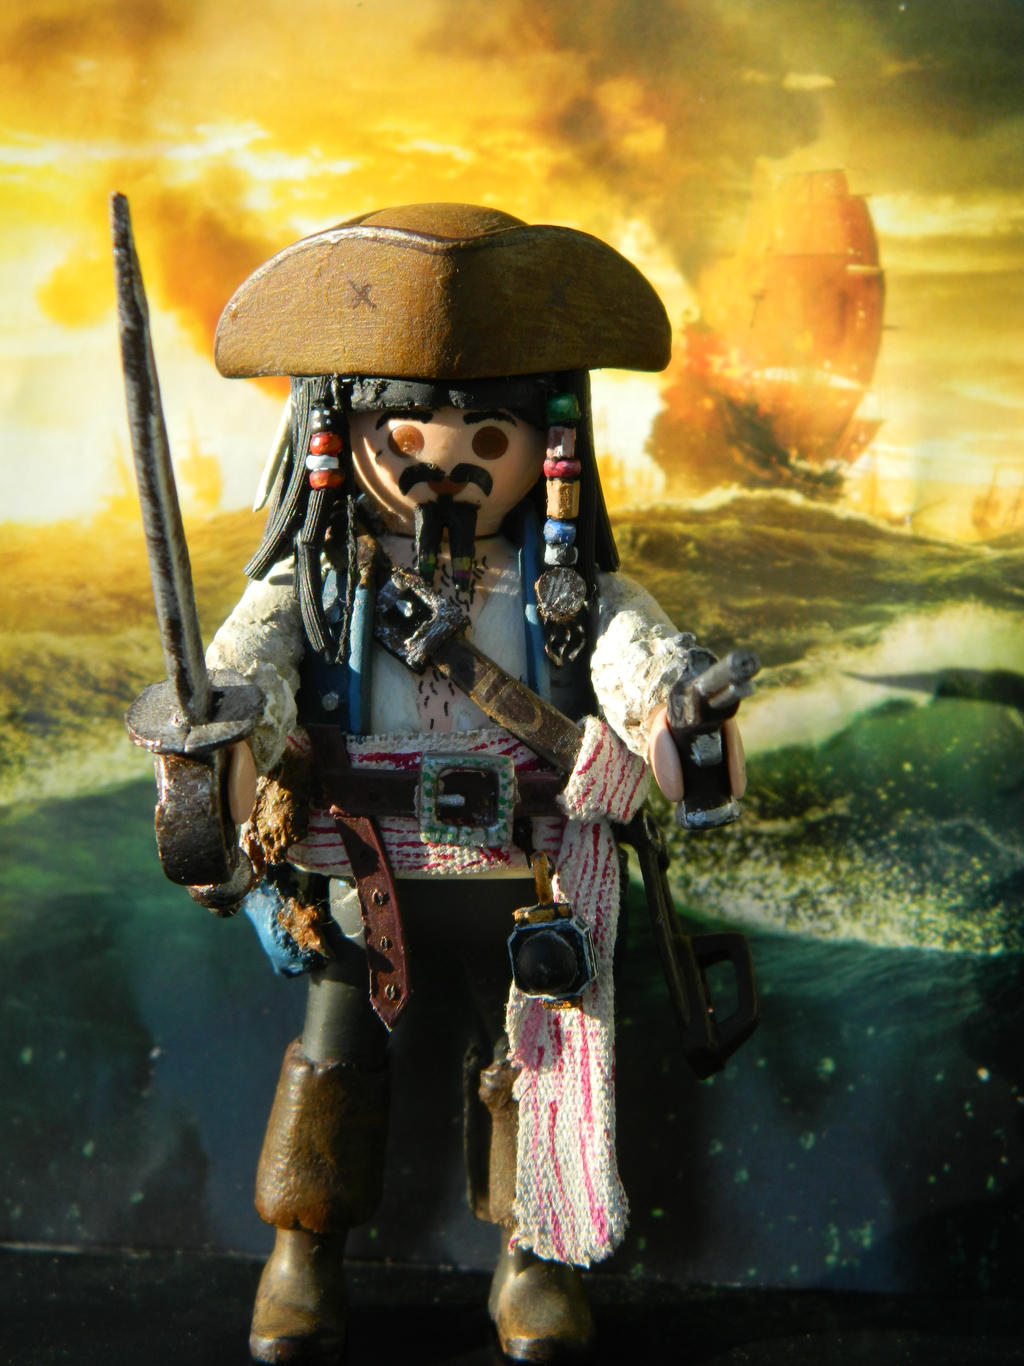 Jack Sparrow Playmobil by oskar7 on DeviantArt